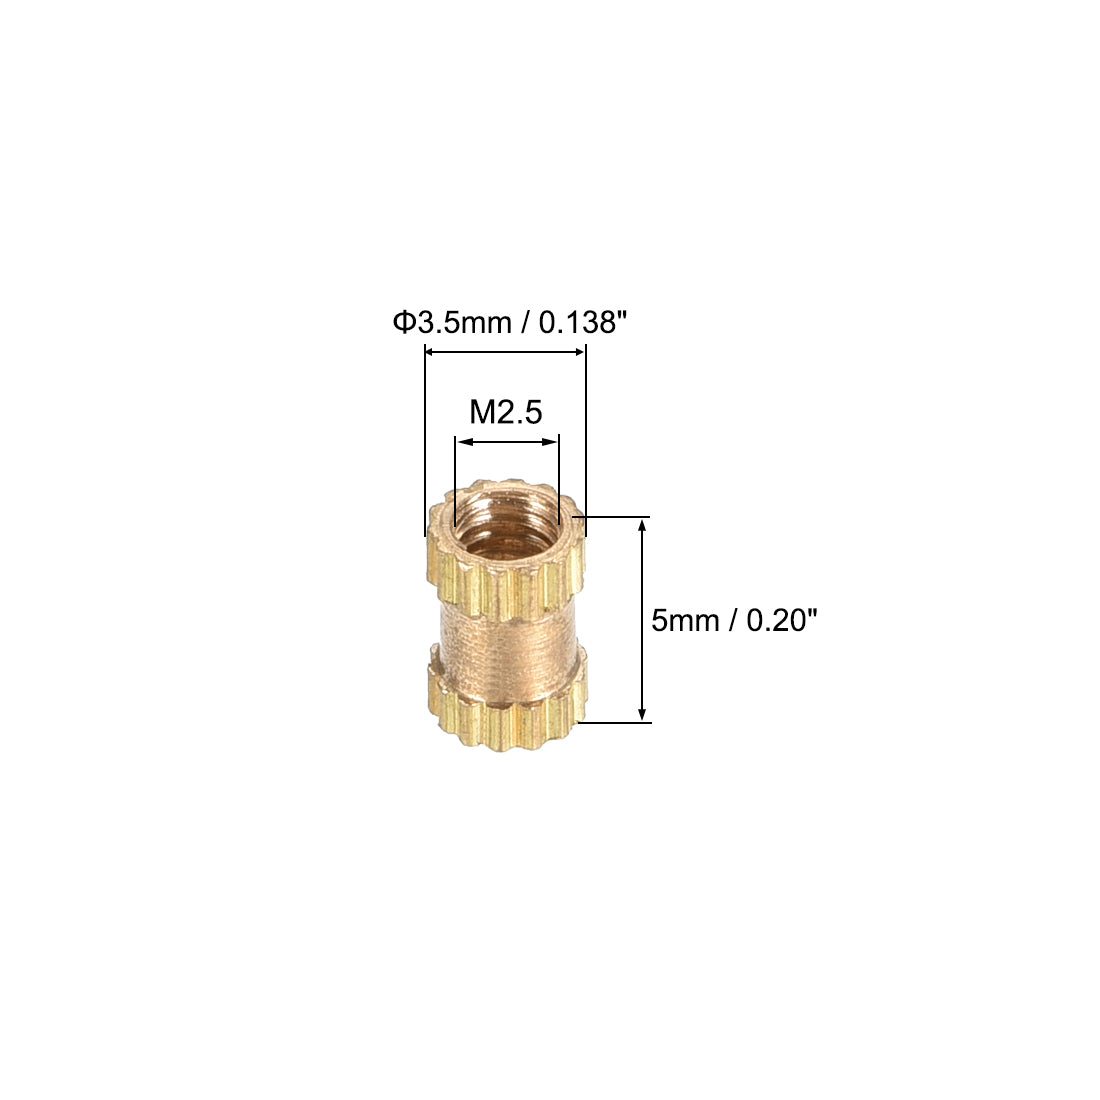 uxcell Uxcell Knurled Insert Nuts, M2.5 x 5mm(L) x 3.5mm(OD) Female Thread Brass Embedment Assortment Kit, 30 Pcs